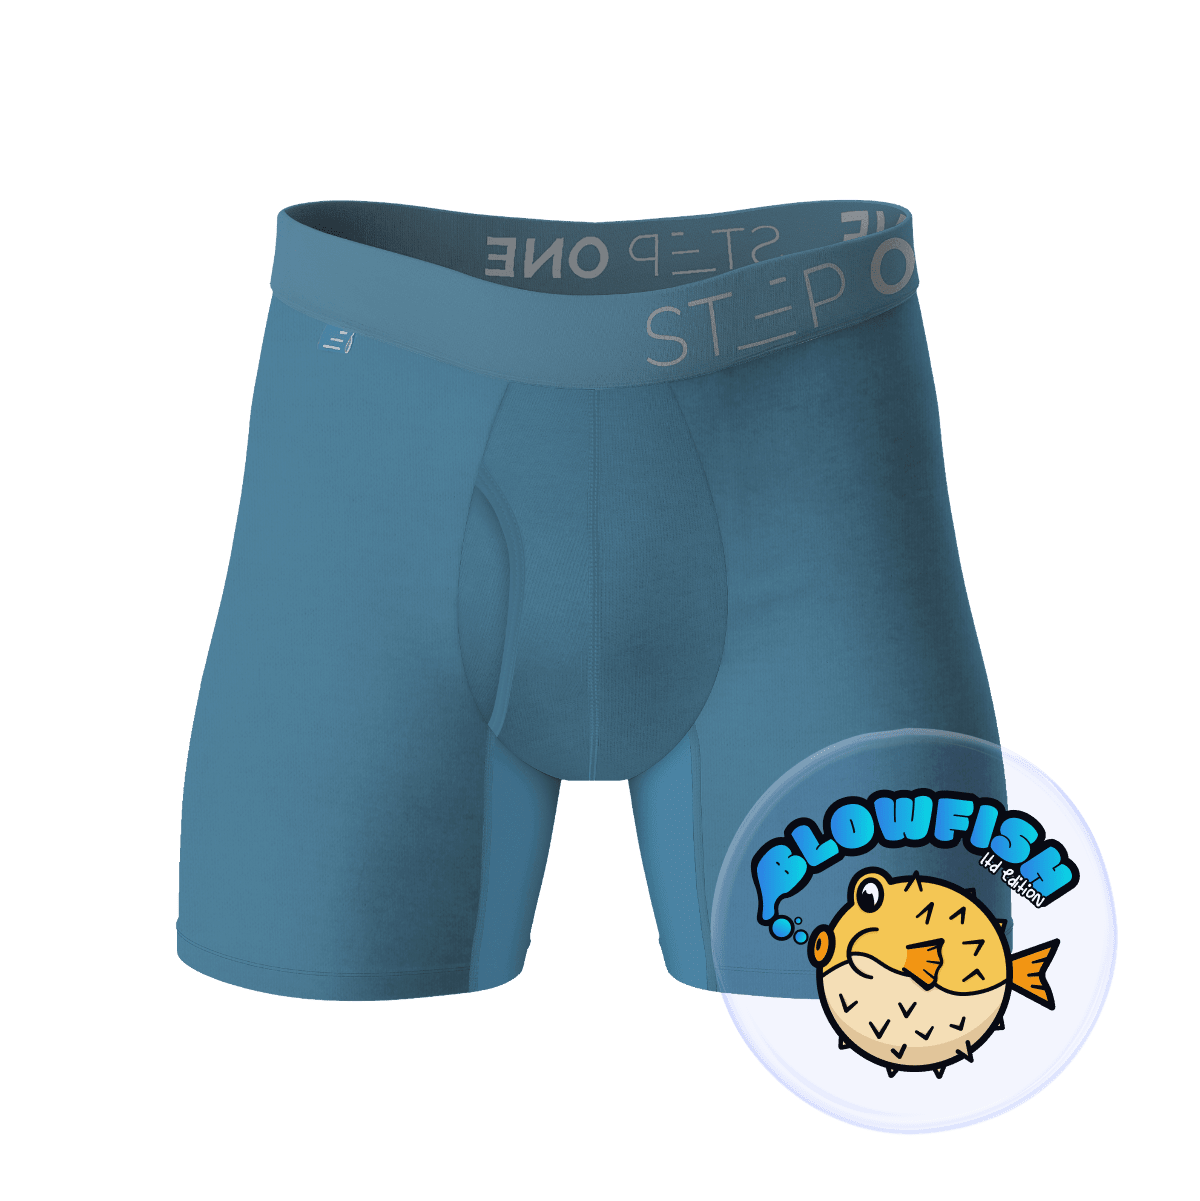 Custom boxer briefs underwear, Bamboo